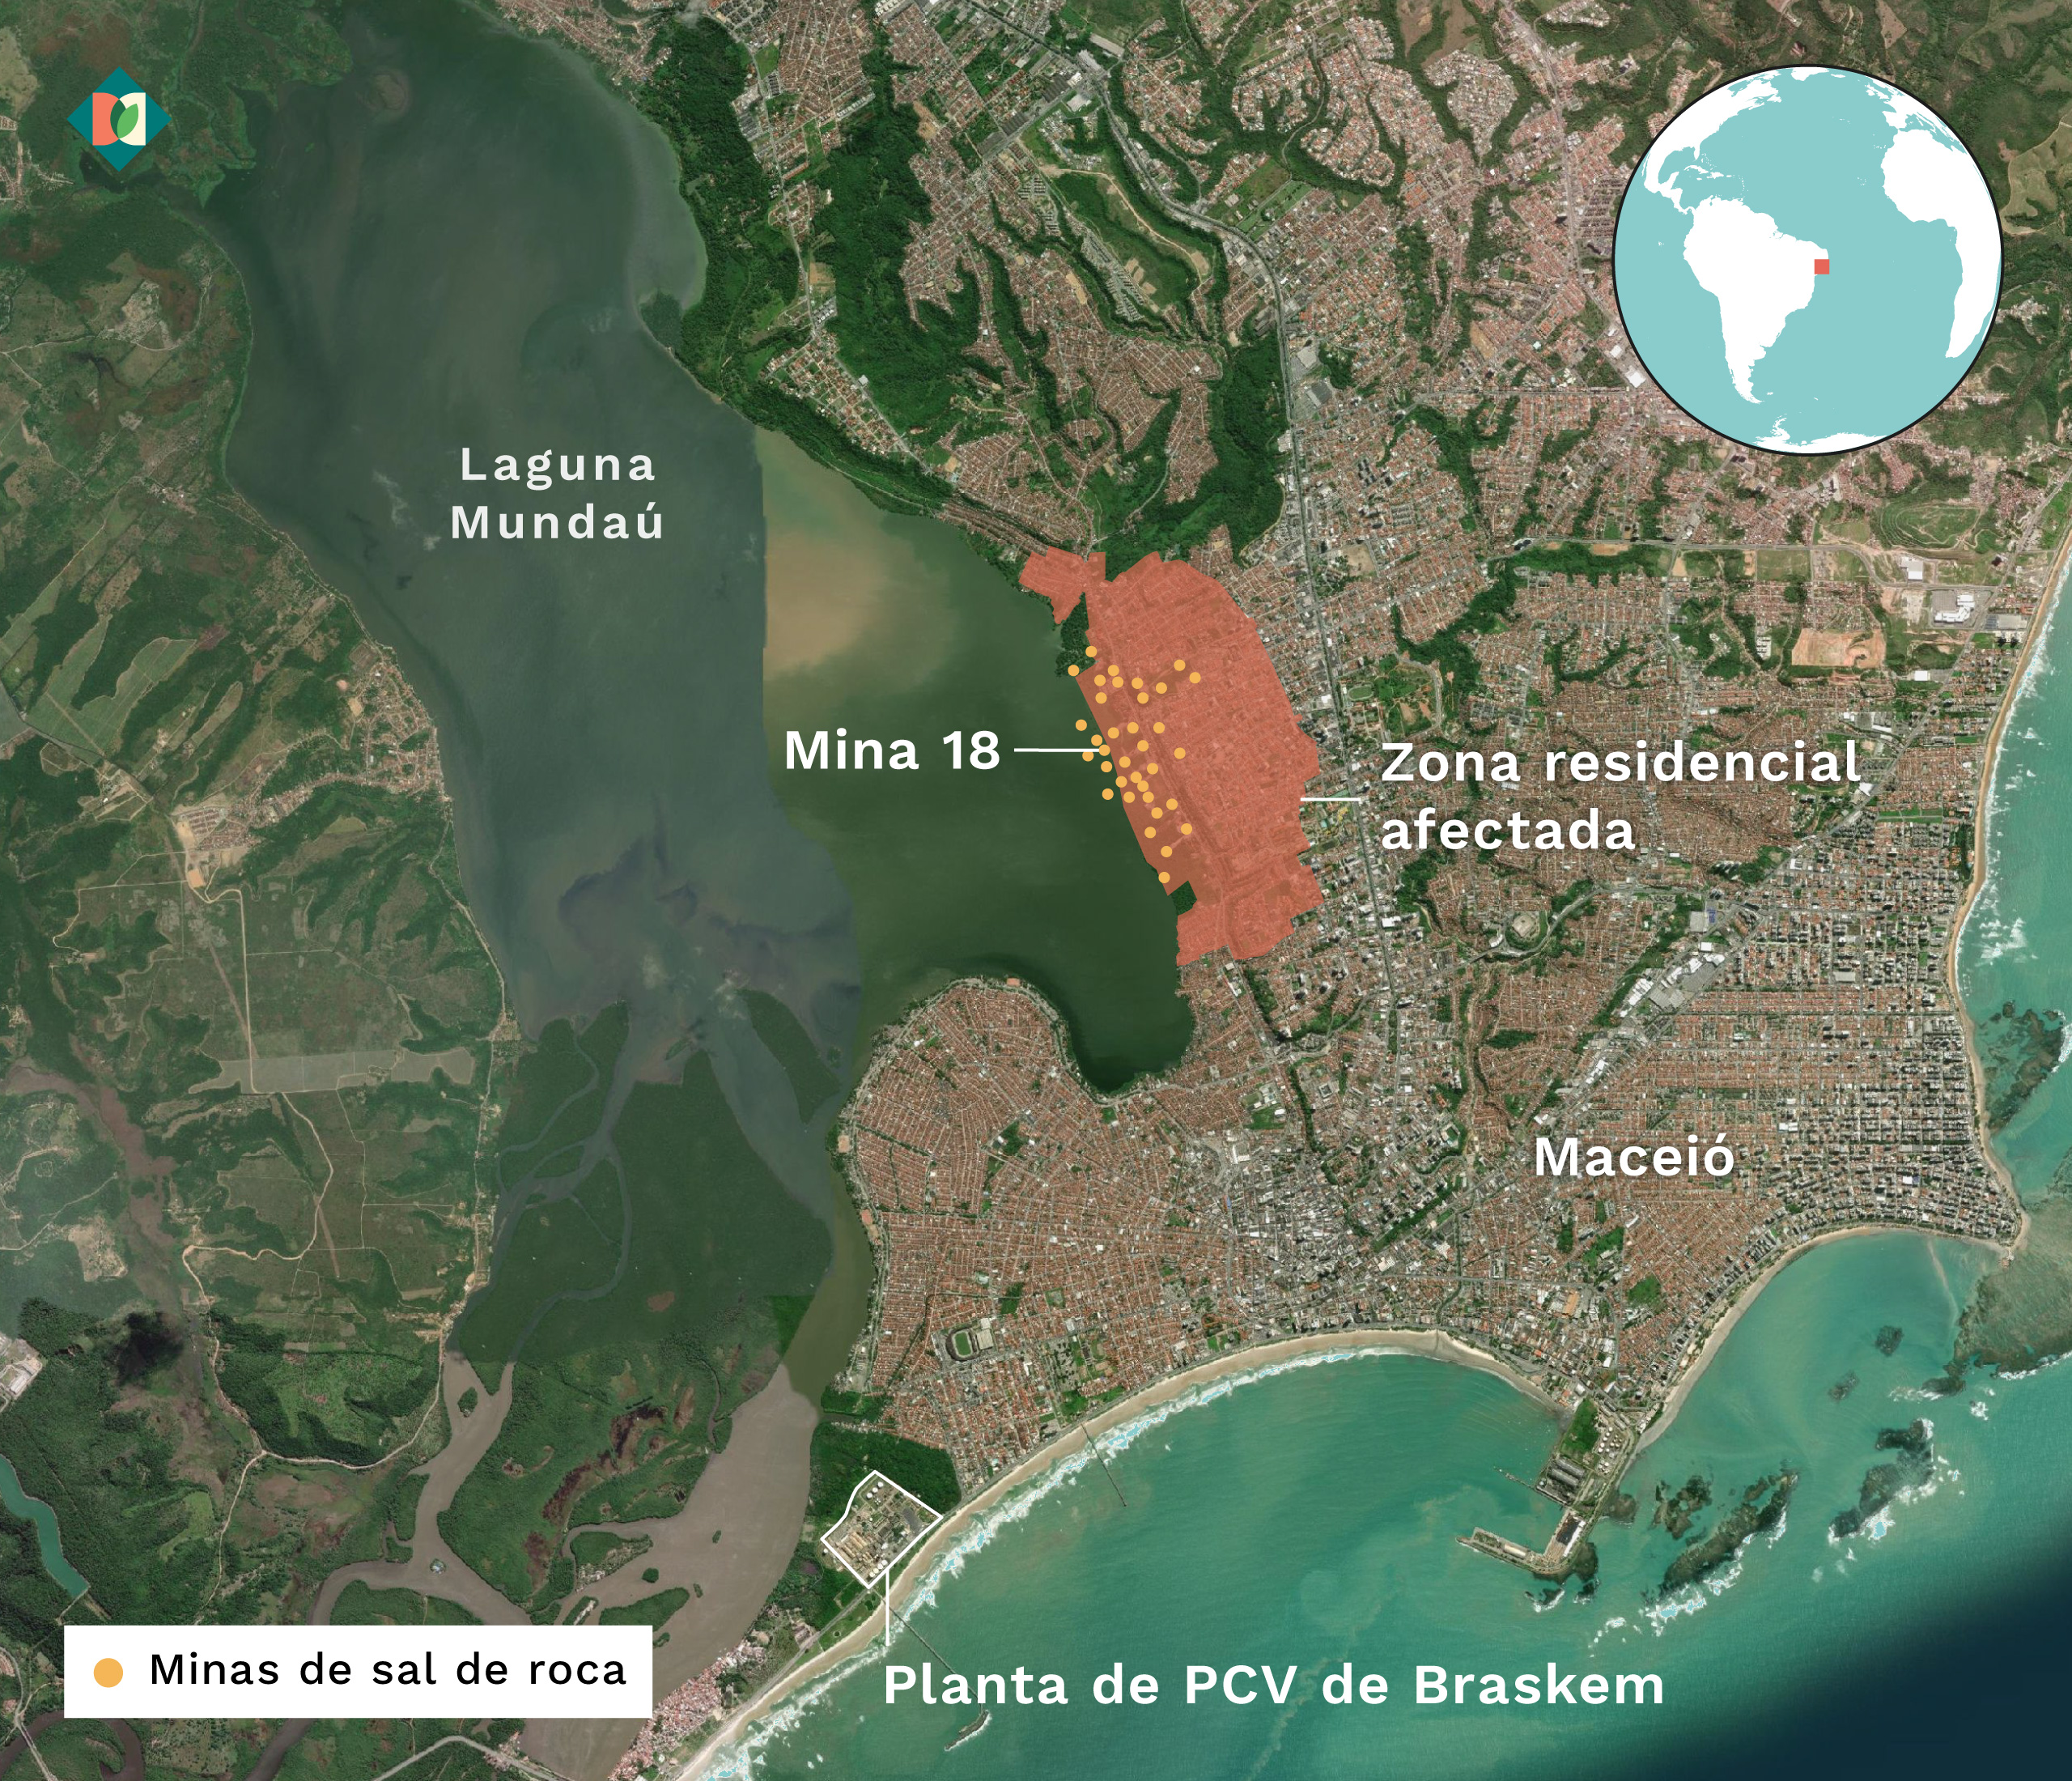 Mapa que muestra la ubicación de la MIna 18, la fábrica de Braskem y la zona residencial afectada